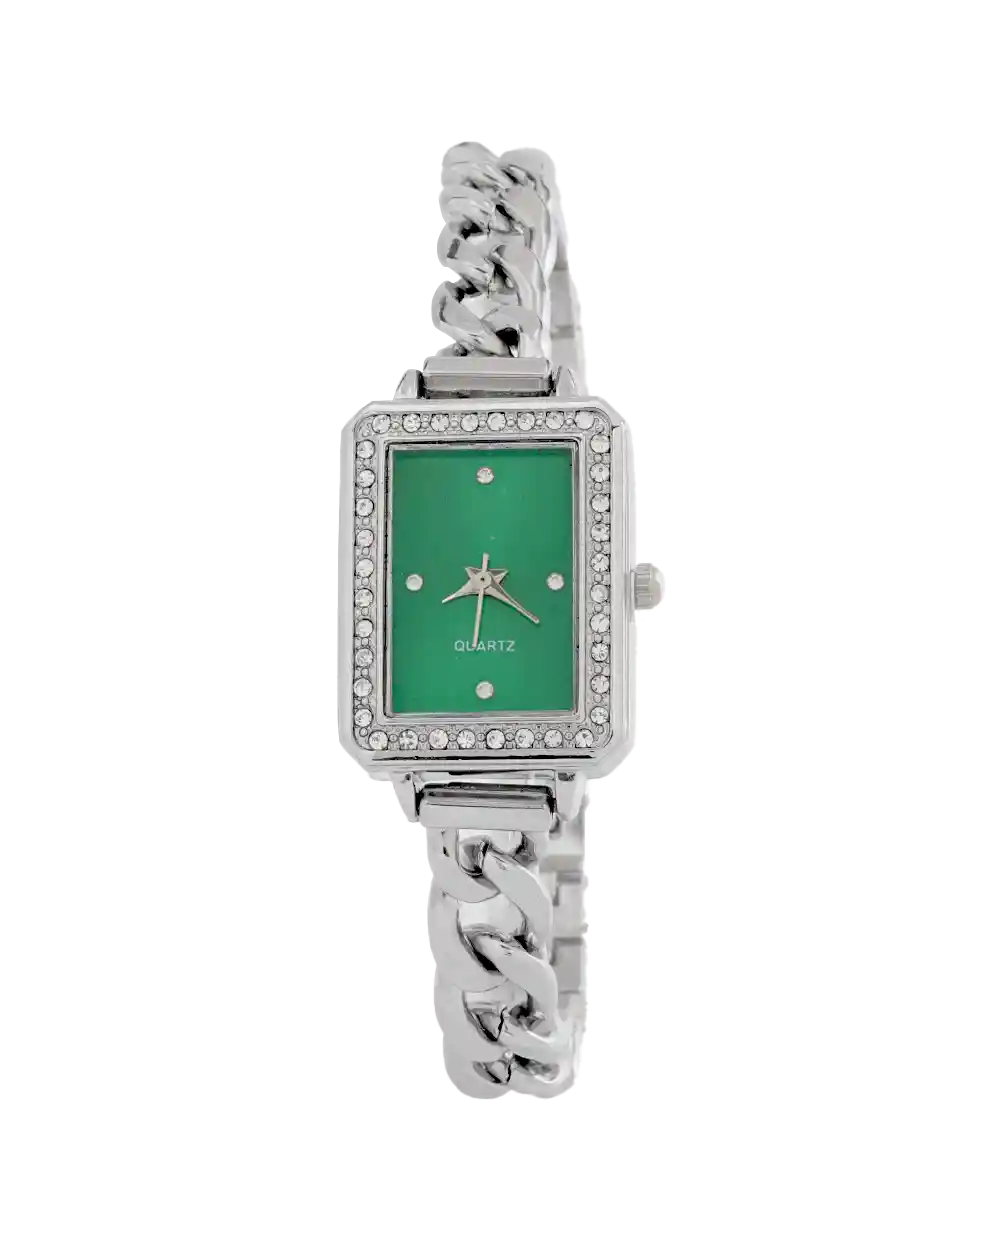 خرید ساعت مچی دستبندی زنانه کارتیه CARTIER مدل 1968 بند استیل زنجیری و صفحه سبز رنگ ثابت بهترین قیمت به همراه ارسال رایگان و جعبه